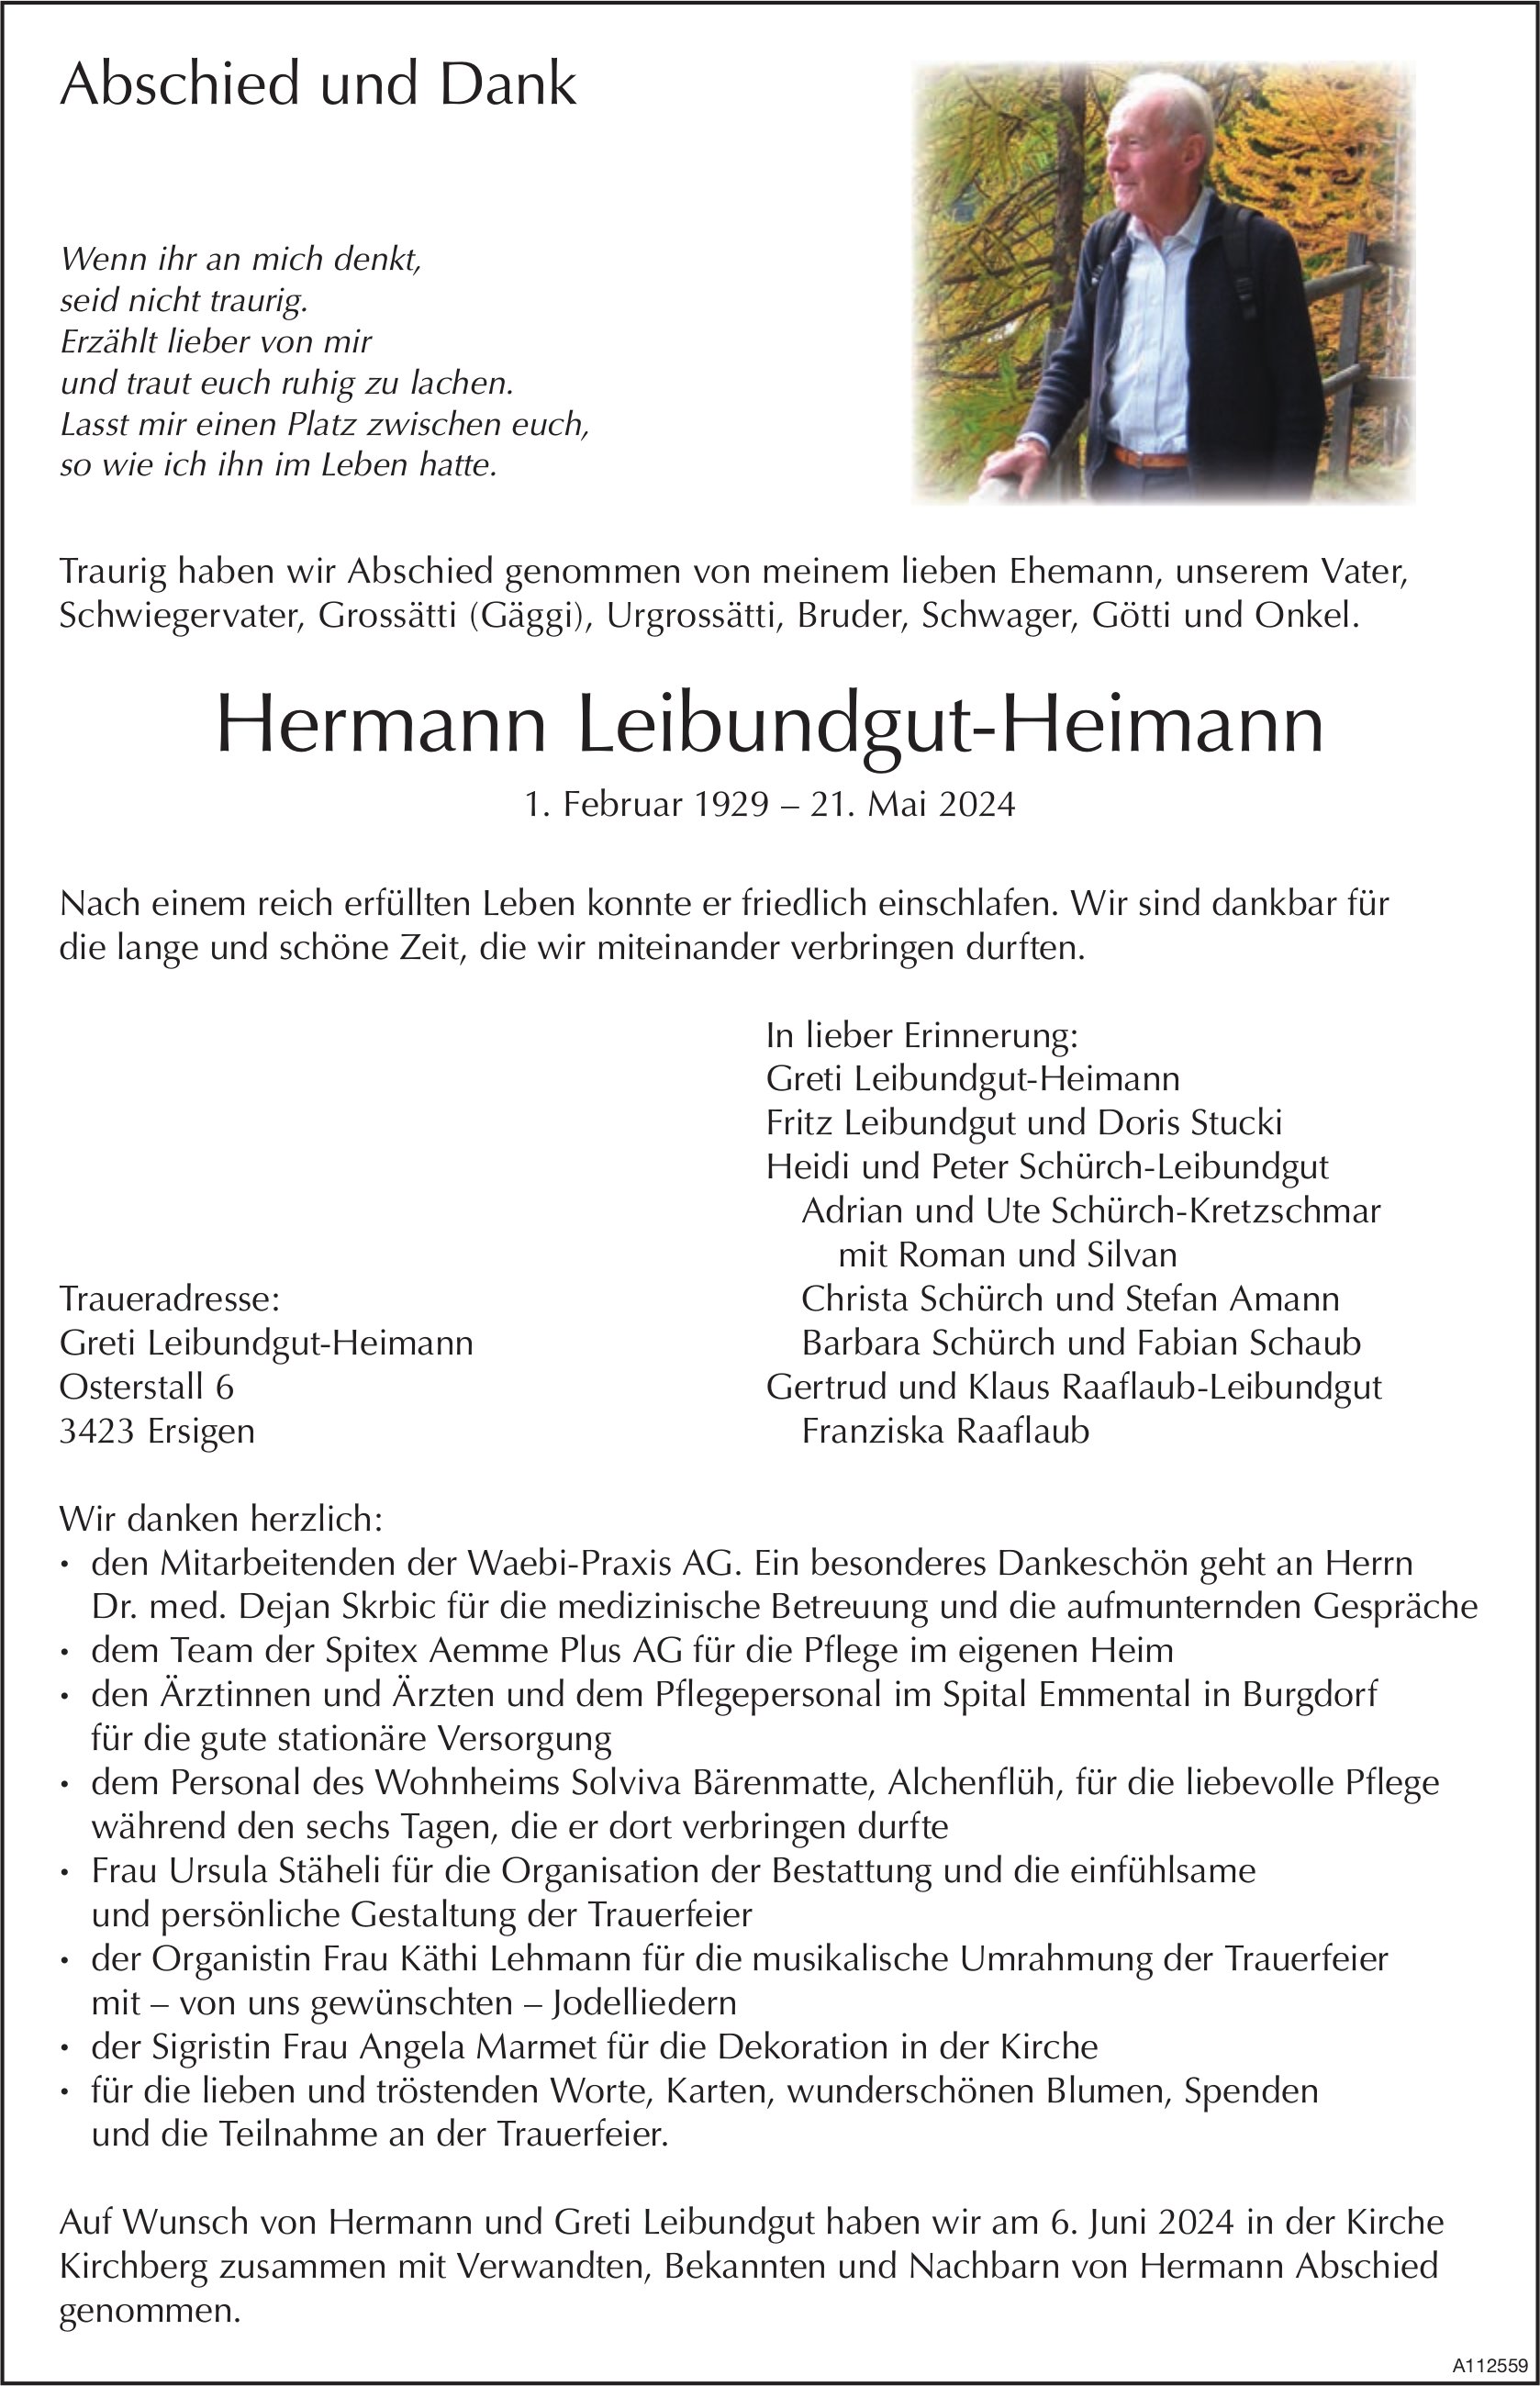 Hermann Leibundgut-Heimann, Mai 2024 / TA